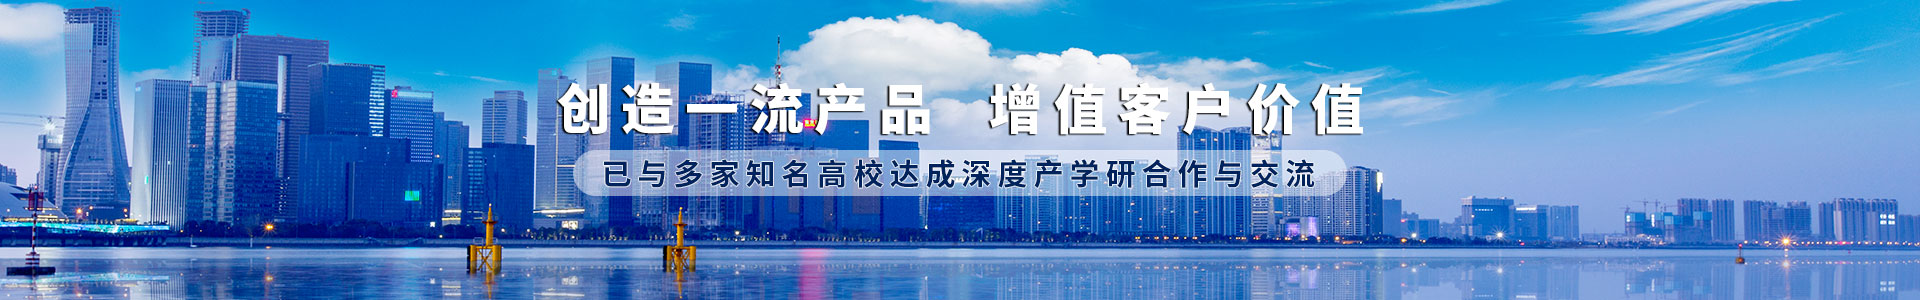 BB电子·(china)官方网站_产品4262